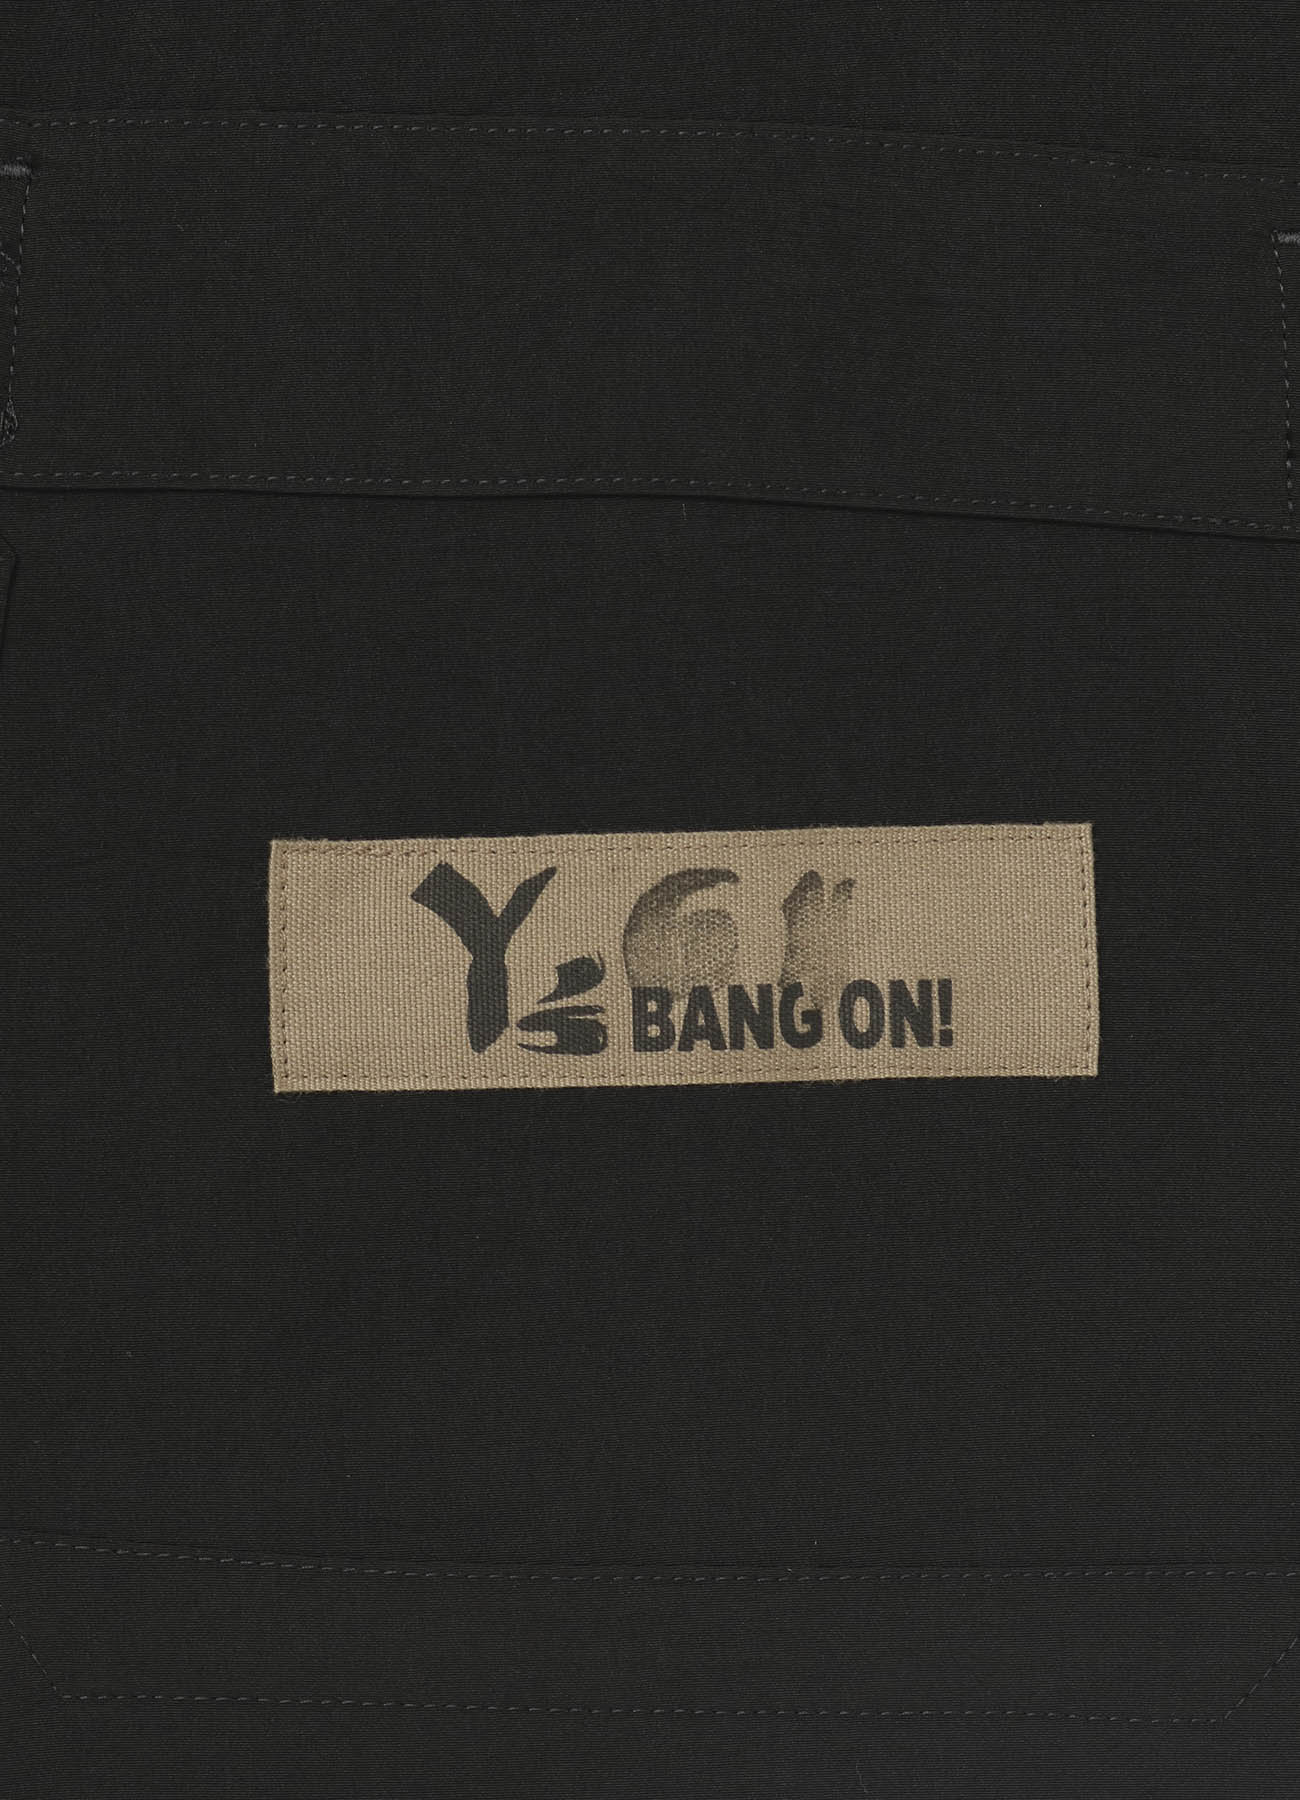 Y's BANG ON!No.64 China-shirts dechine